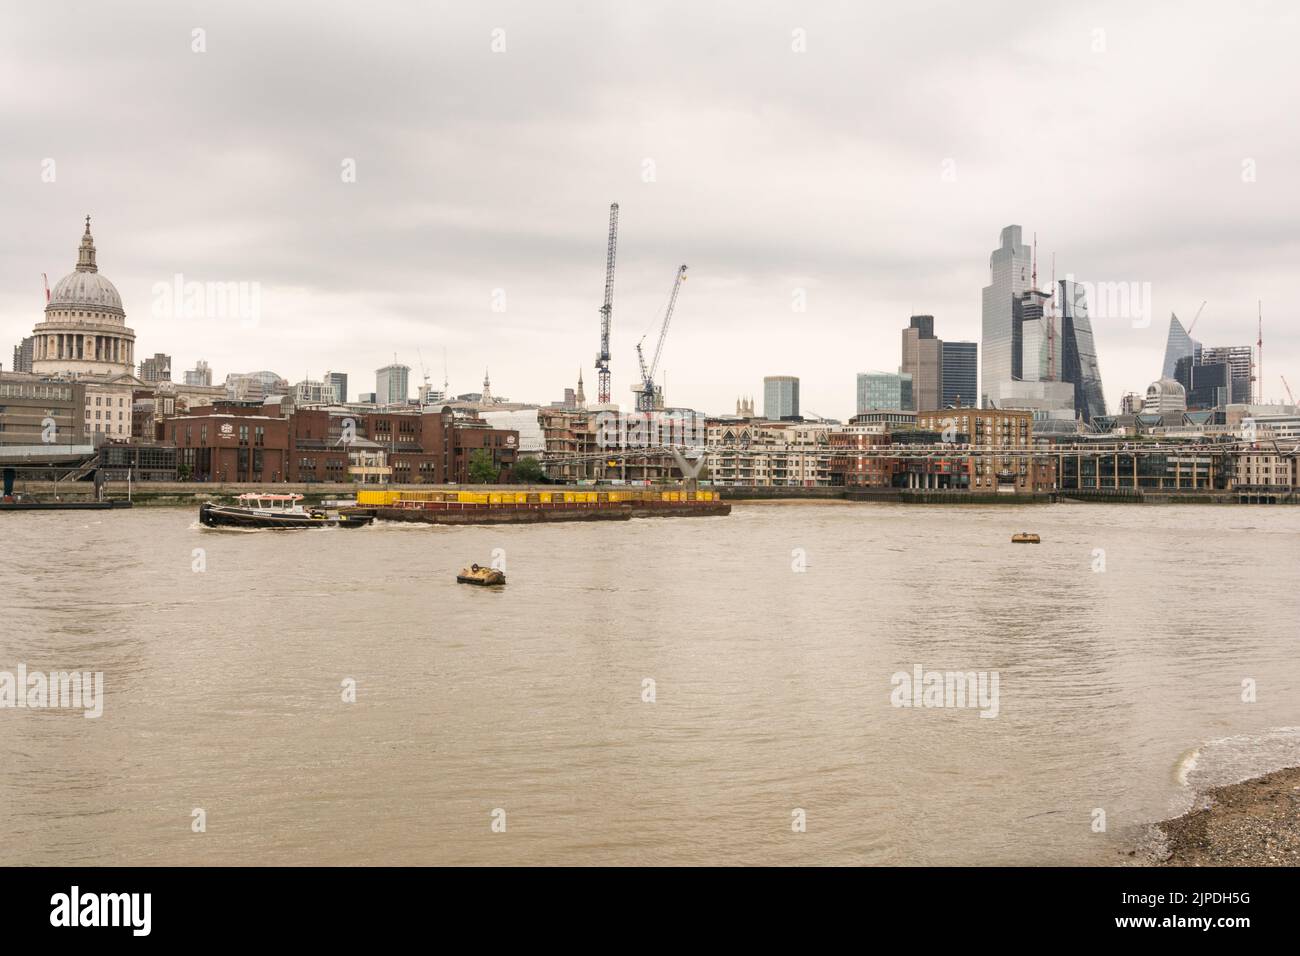 Cory Tugboat Recovery navigando a monte e oltrepassando lo skyline di St Paul's e City of London, come si vede da Bankside sul Tamigi, Londra, Inghilterra, Regno Unito Foto Stock